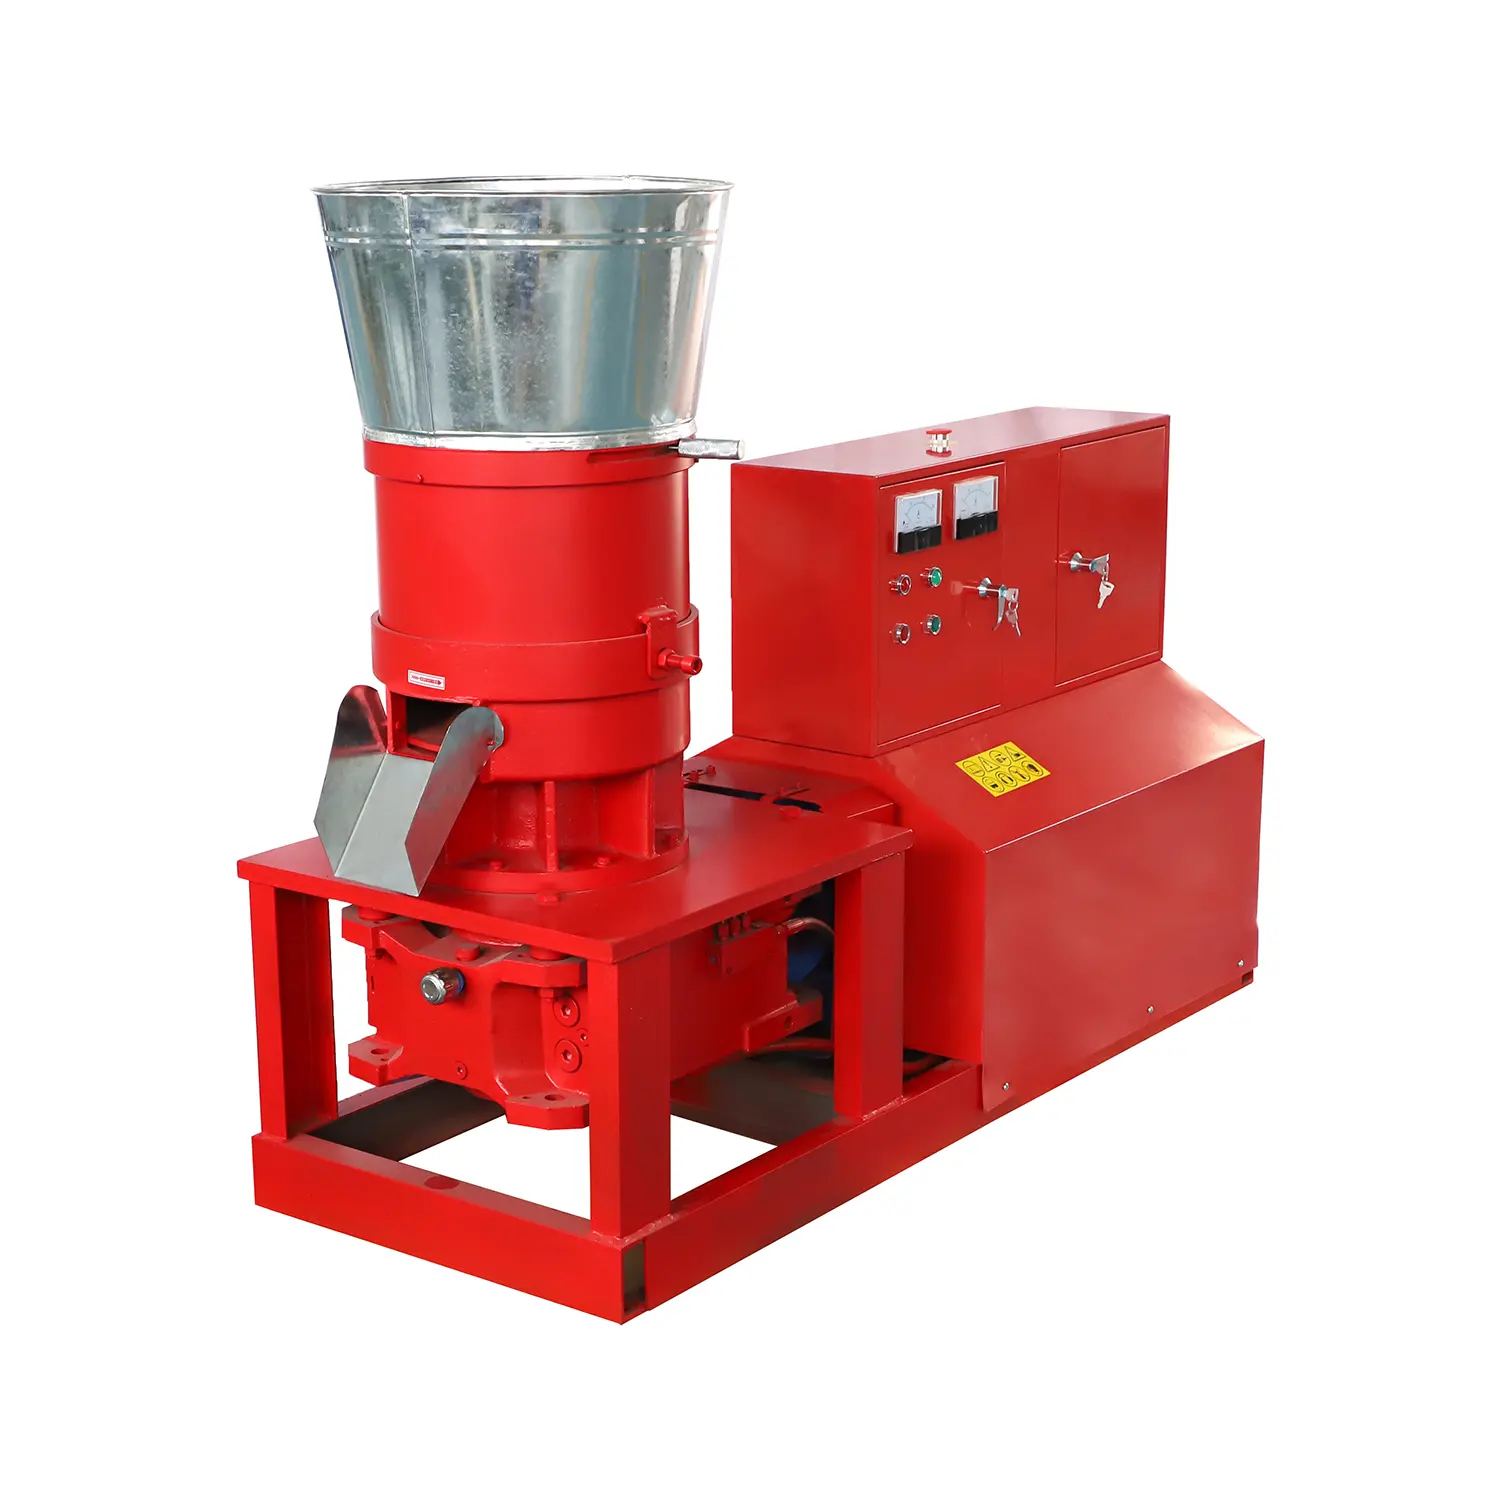 Máquina de prensa de pellets de rama de mazorca de maíz plana accionada por rodillo certificado CE MKL395 para autolubricación de pellets de madera